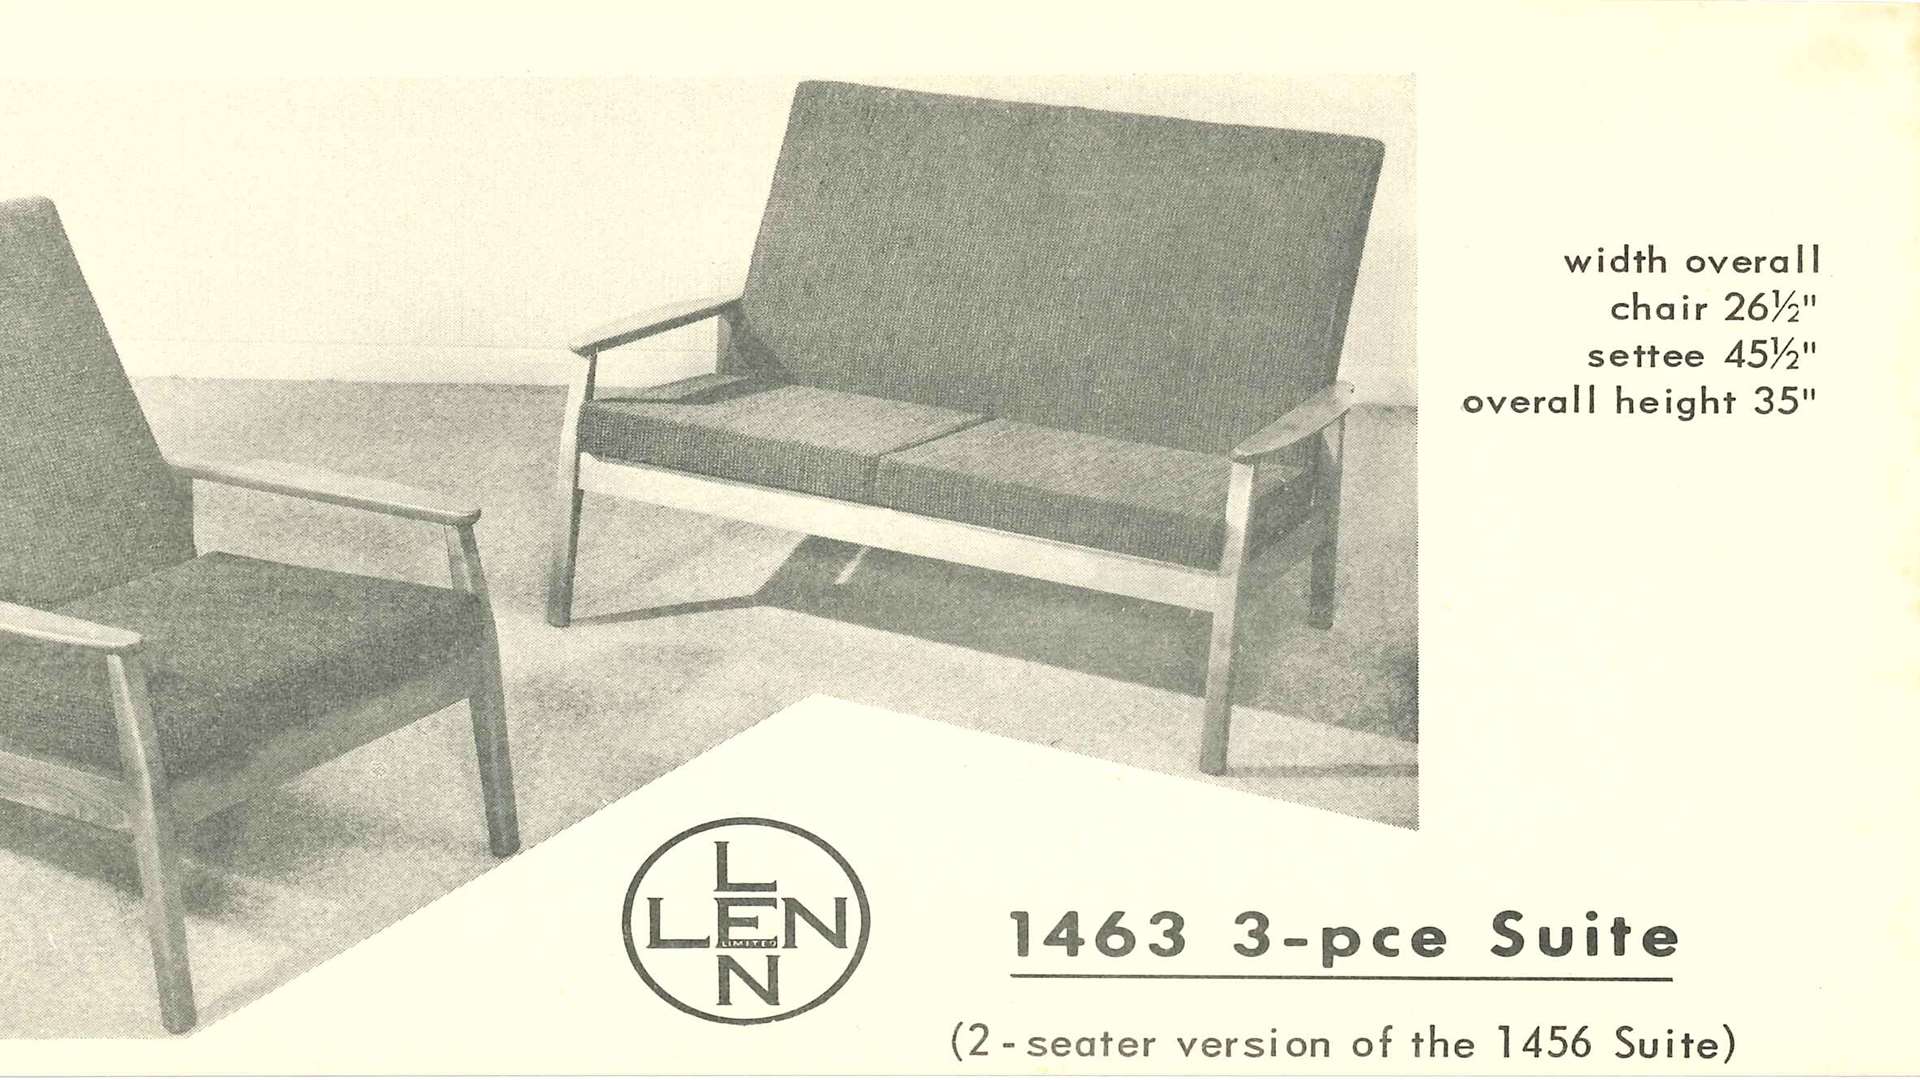 Some Len Cabinet furniture